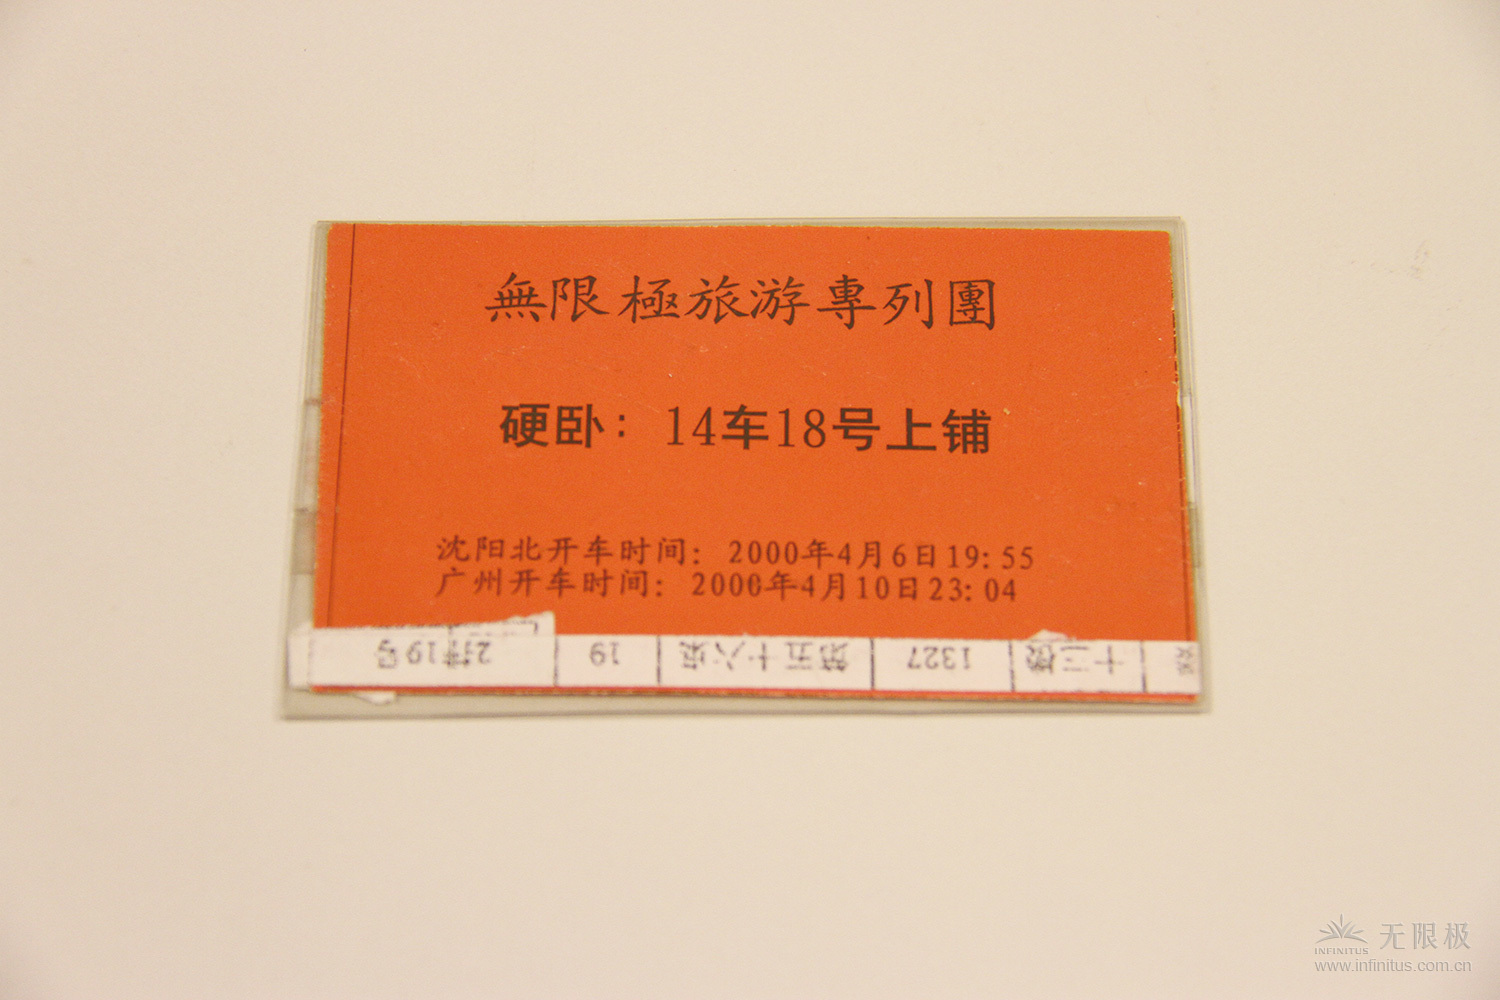 伙伴手里还保存这次销售年会569vip威尼斯游戏旅游专列团的车票。